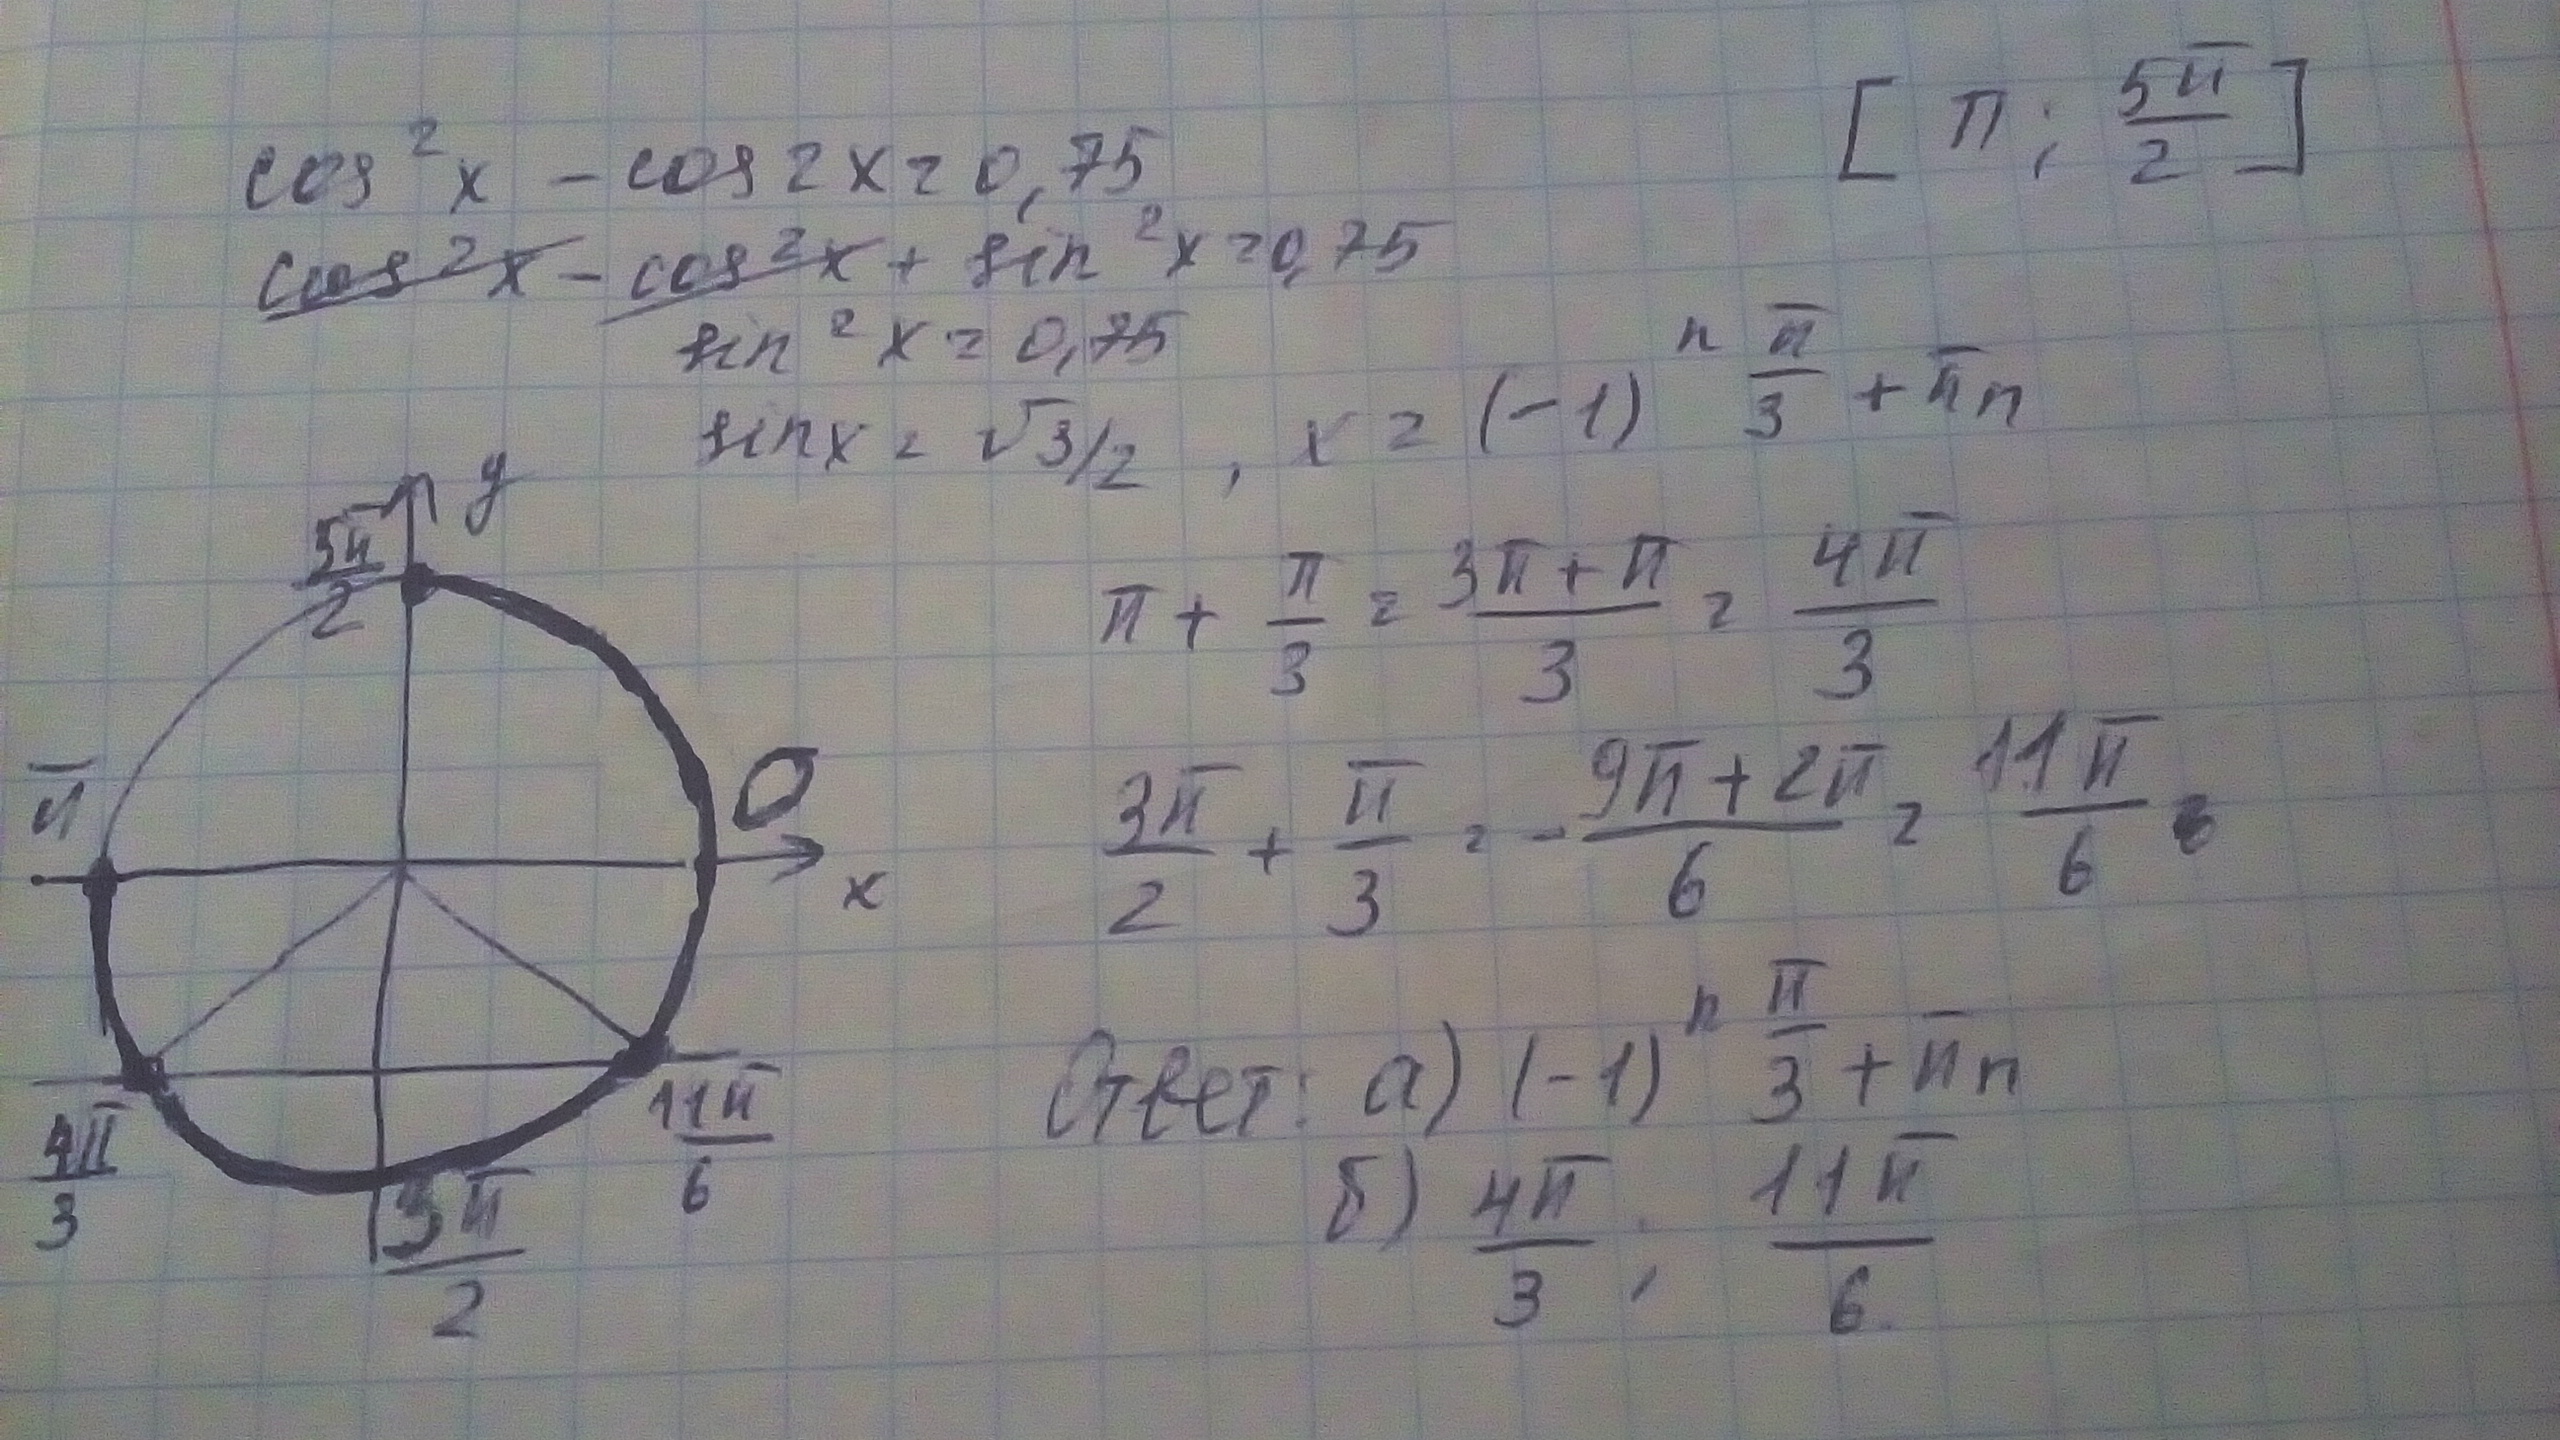 2cos 2x 2 0. Cos2x+sin2x 0.75. Cos^2x=0,75. Cos2x sin 2x 0 75 п 5п/2. Решите уравнение cos2x+sin2x 0.75.